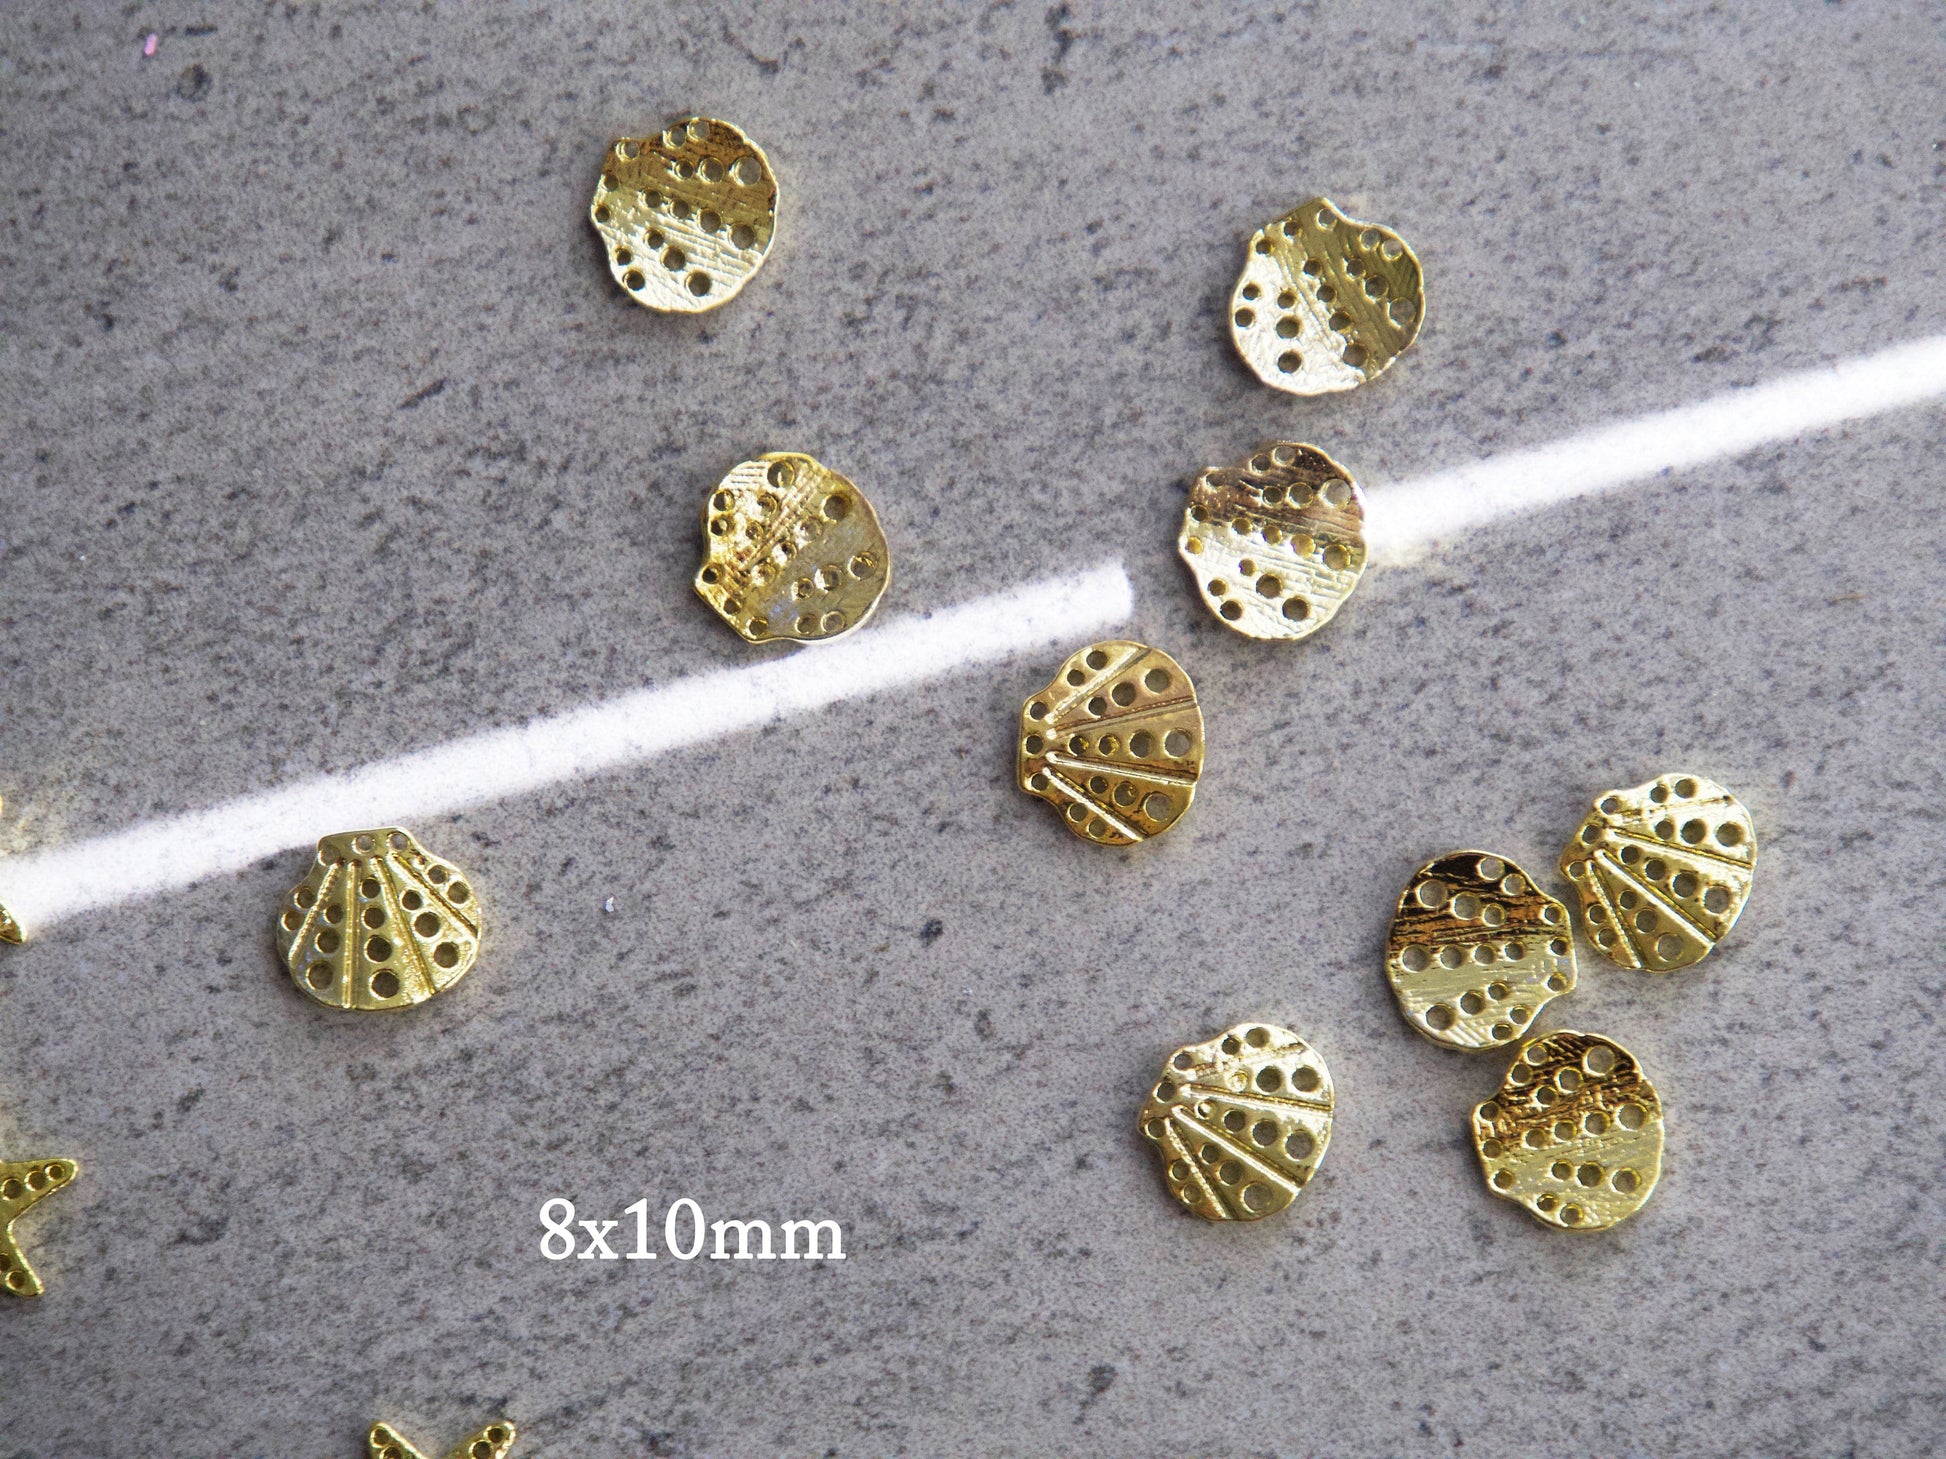 5 pcs 3D Sea Star shell nail decoration/ Beach Metallic Miniature Ocean Nail DIY deco/ Mermaid tail nail charms Marine design nail art